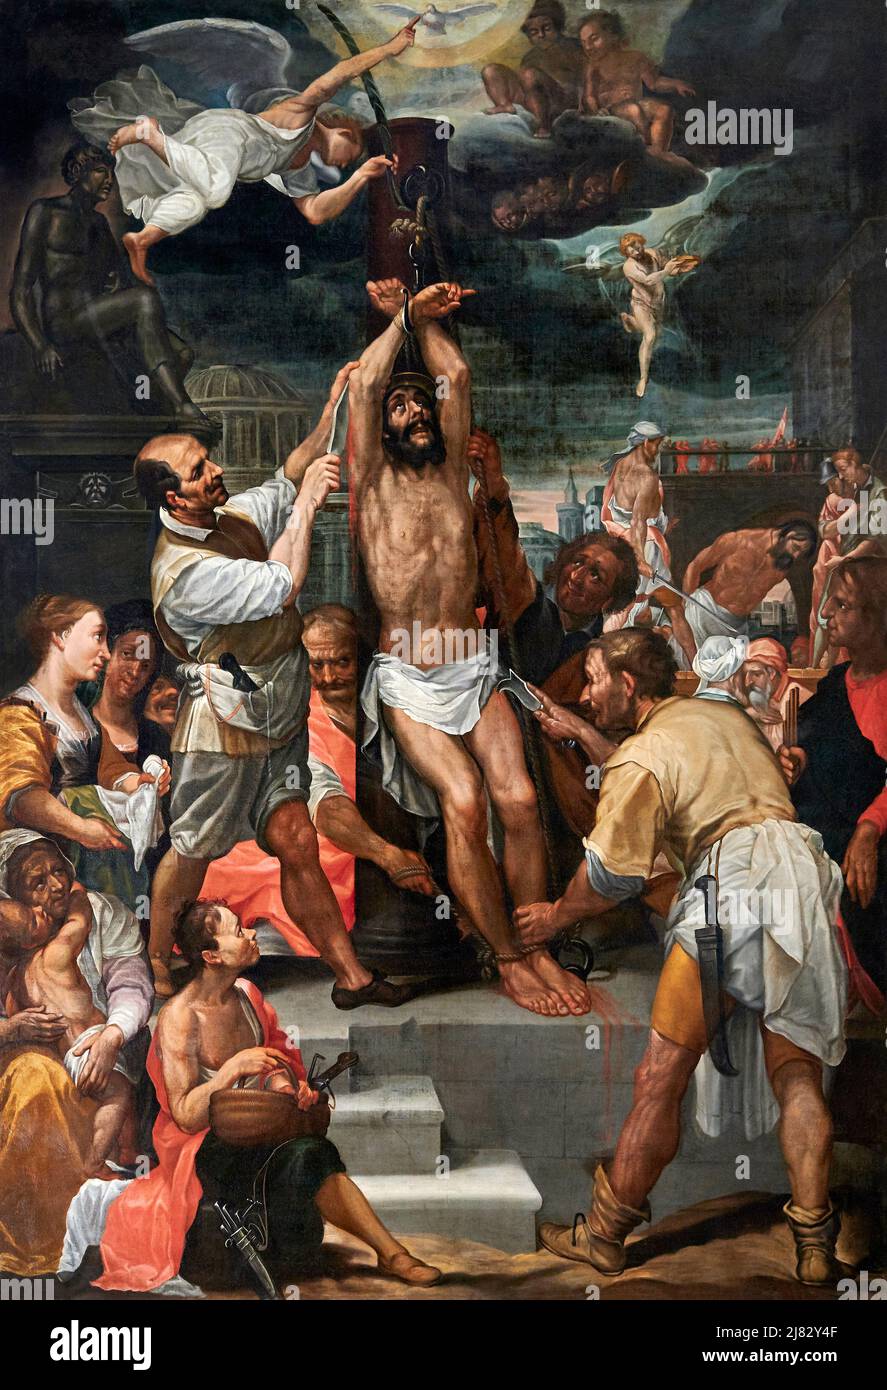 Martirio di San Bartolomeo  - olio su tela - pittore toscano -  1625 - Colle Val d’Elsa (Si),Italia, chiesa di S.Agostino Stock Photo